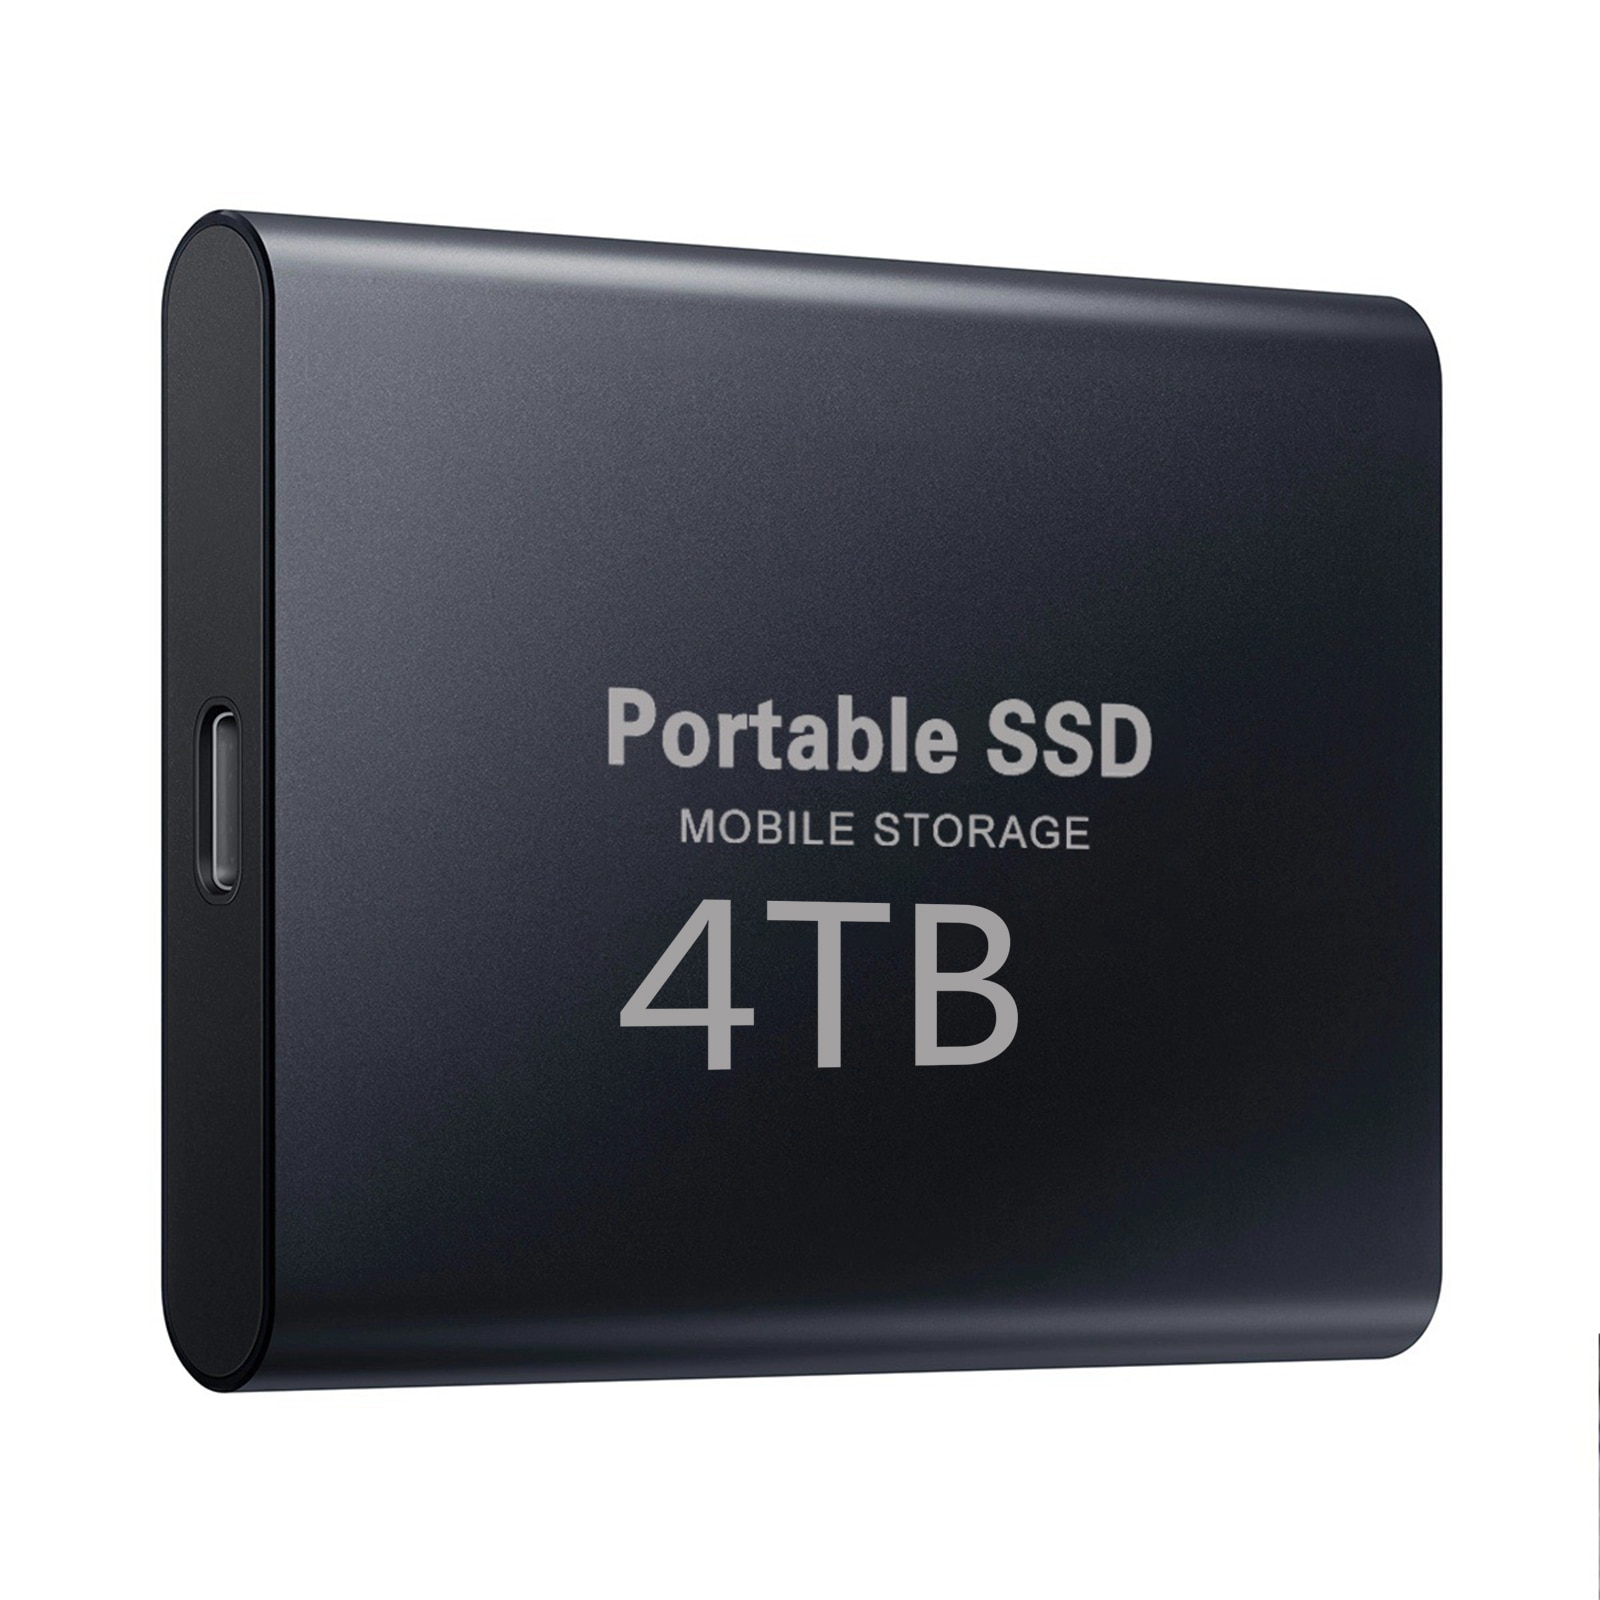 Type-c USB 3.1 SSD 휴대용 플래시 메모리 4 테라바이트 SSD 하드 드라이브 240GB 500GB 휴대용 SSD 외장형 SSD 하드 드라이브 (노트북 데스크탑 용)